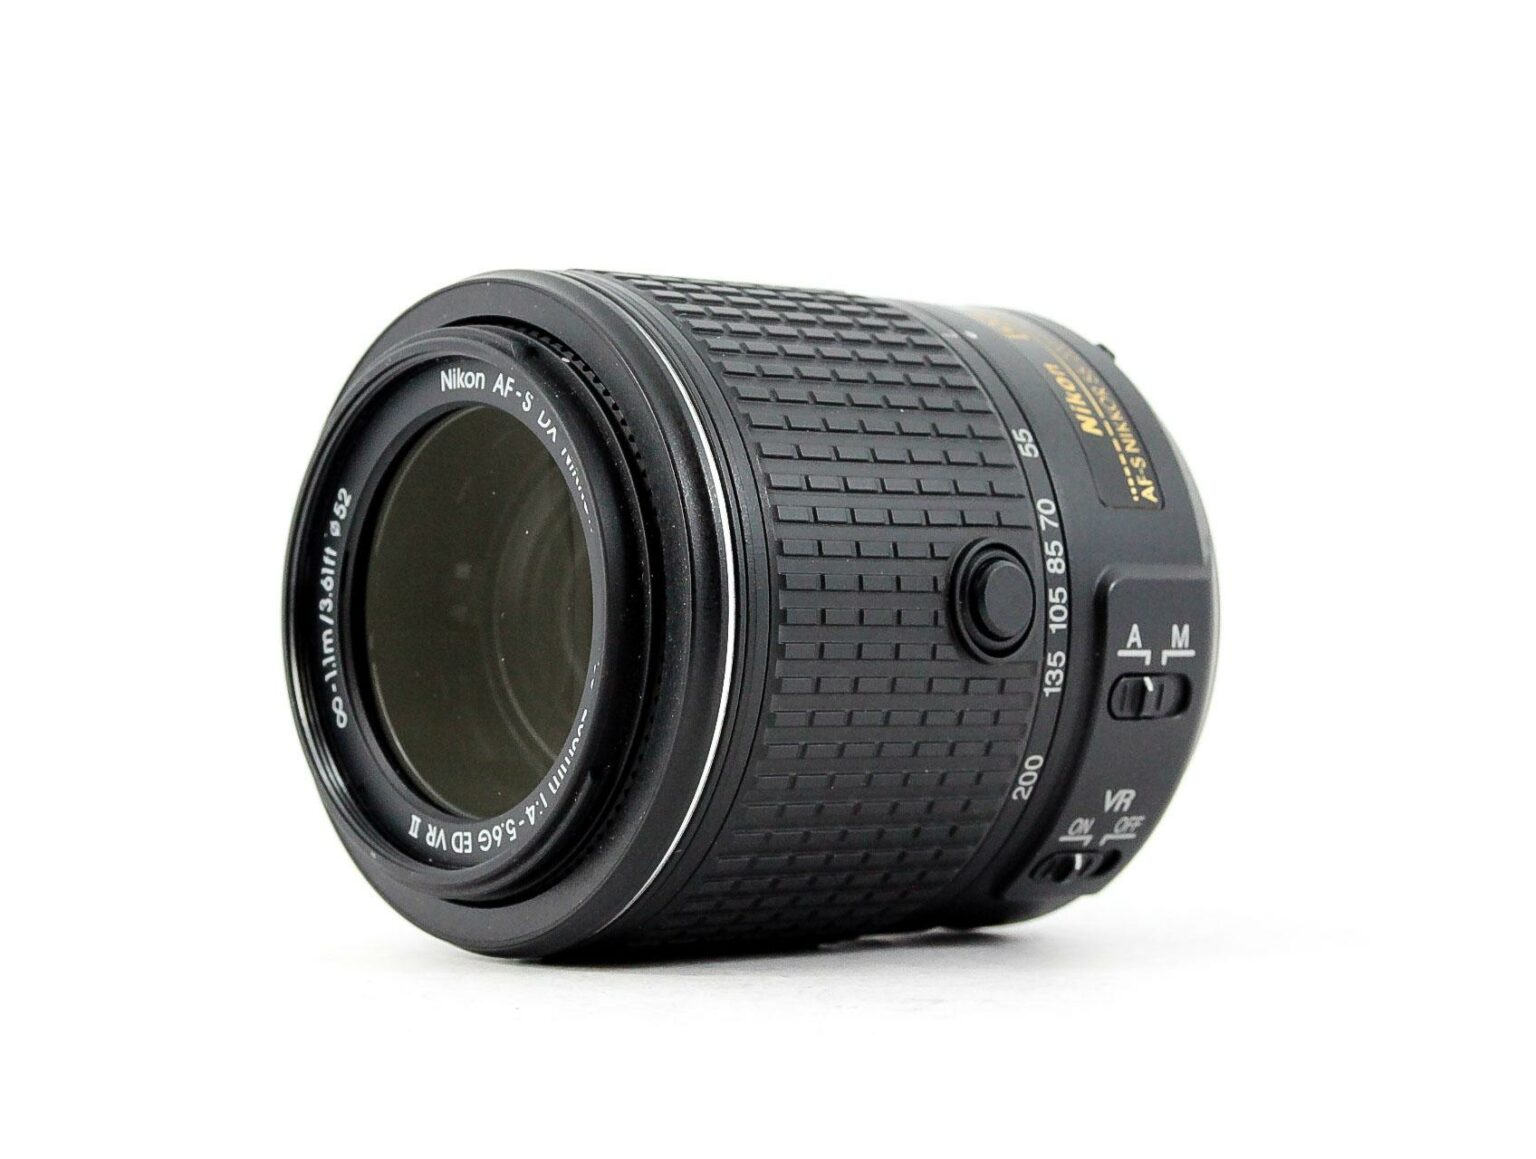 Nikon AF-S DX 55-300F4.5-5.6G ED VR+secpp.com.br